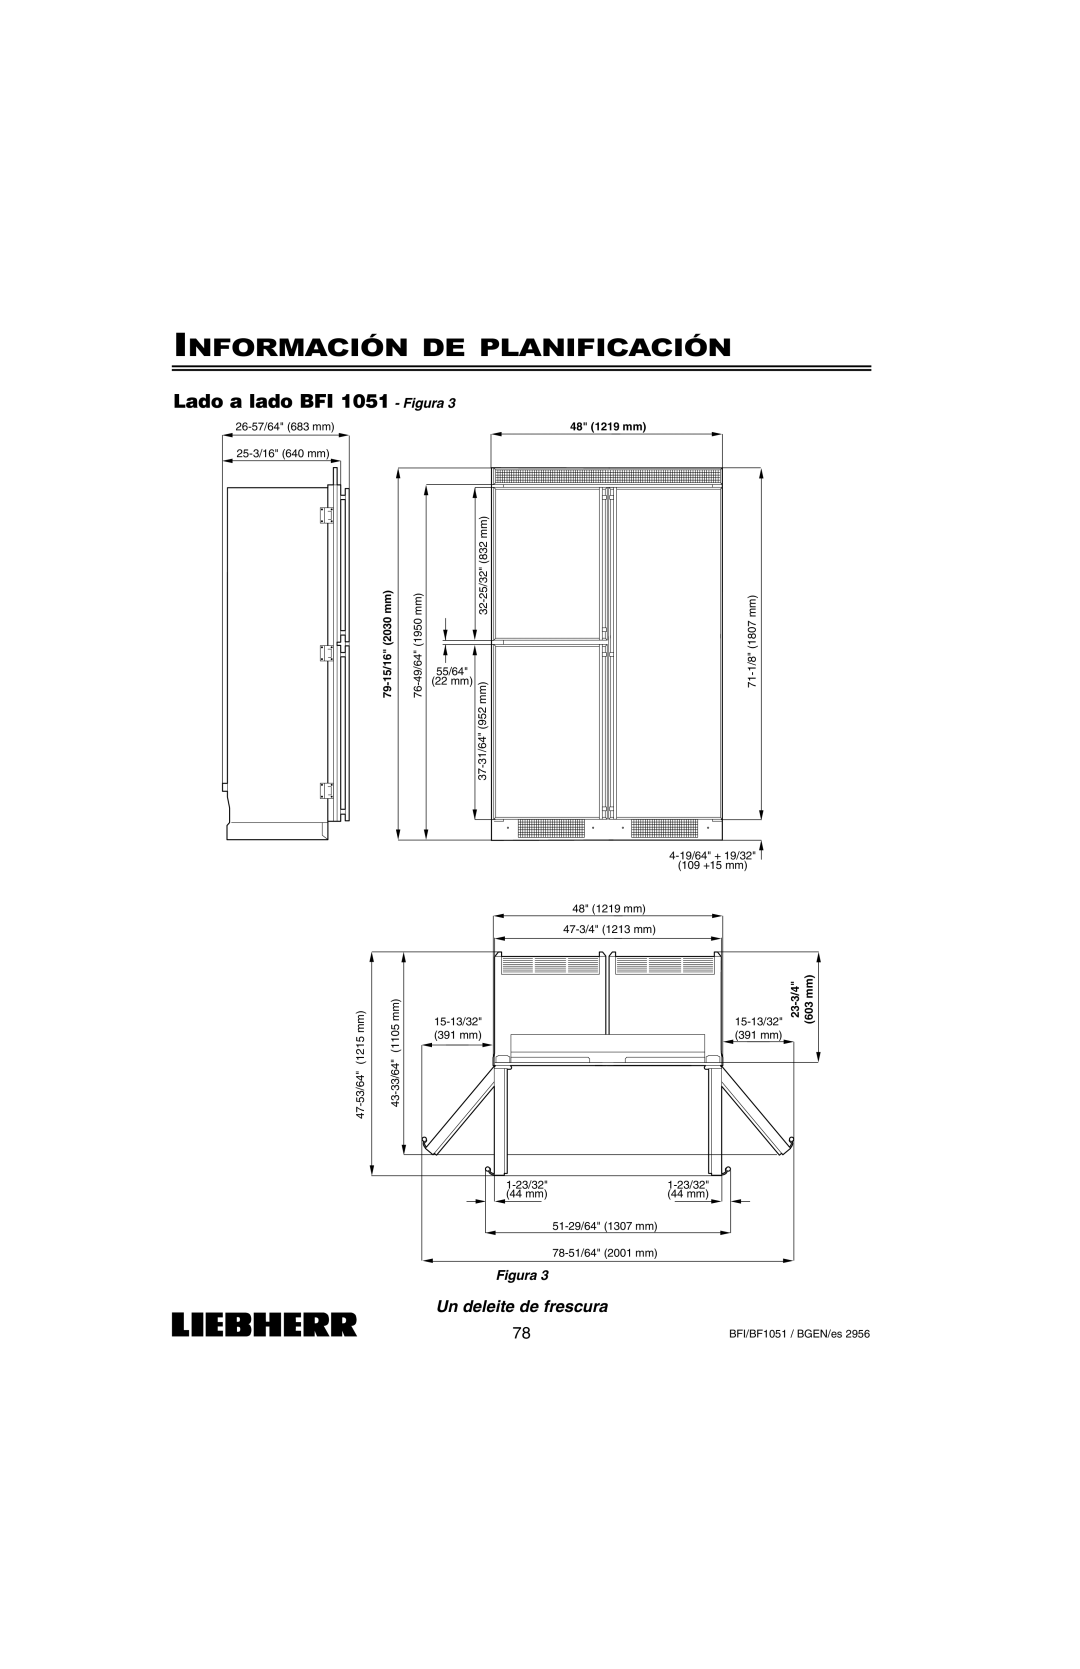 Liebherr BFI1051, BF1051 Lado a lado BFI 1051 - Figura, Información De Planificación, Un deleite de frescura 